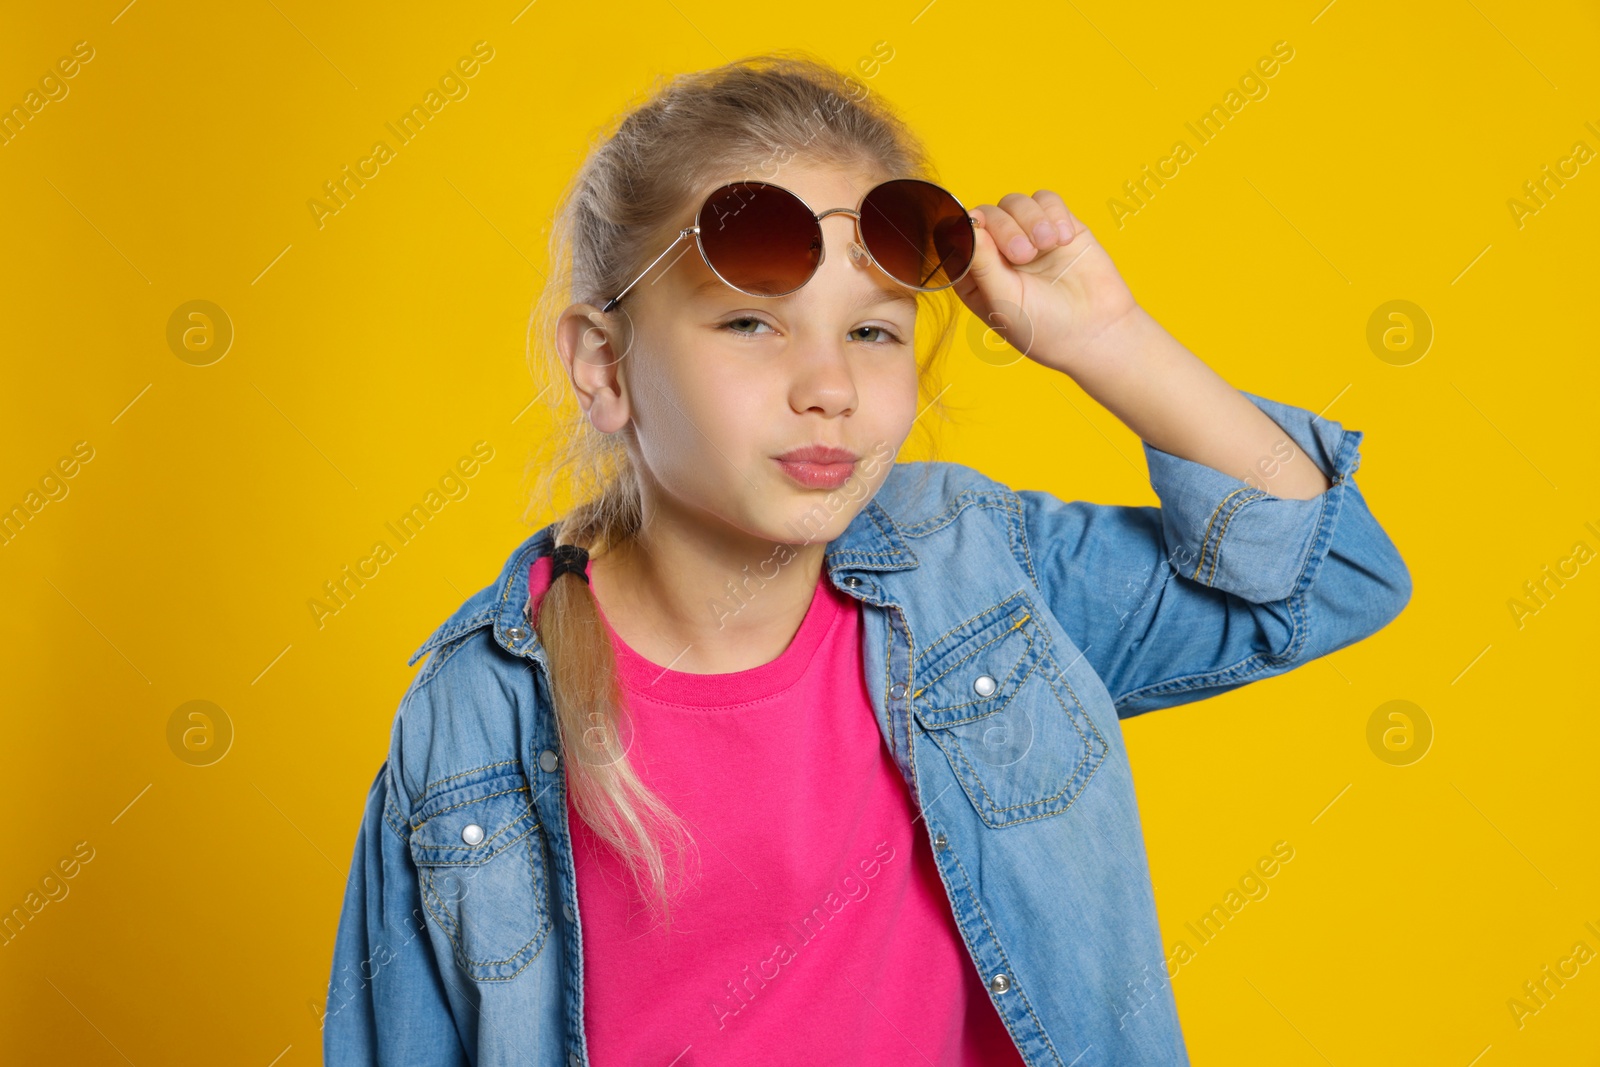 Photo of Girl wearing stylish sunglasses on orange background